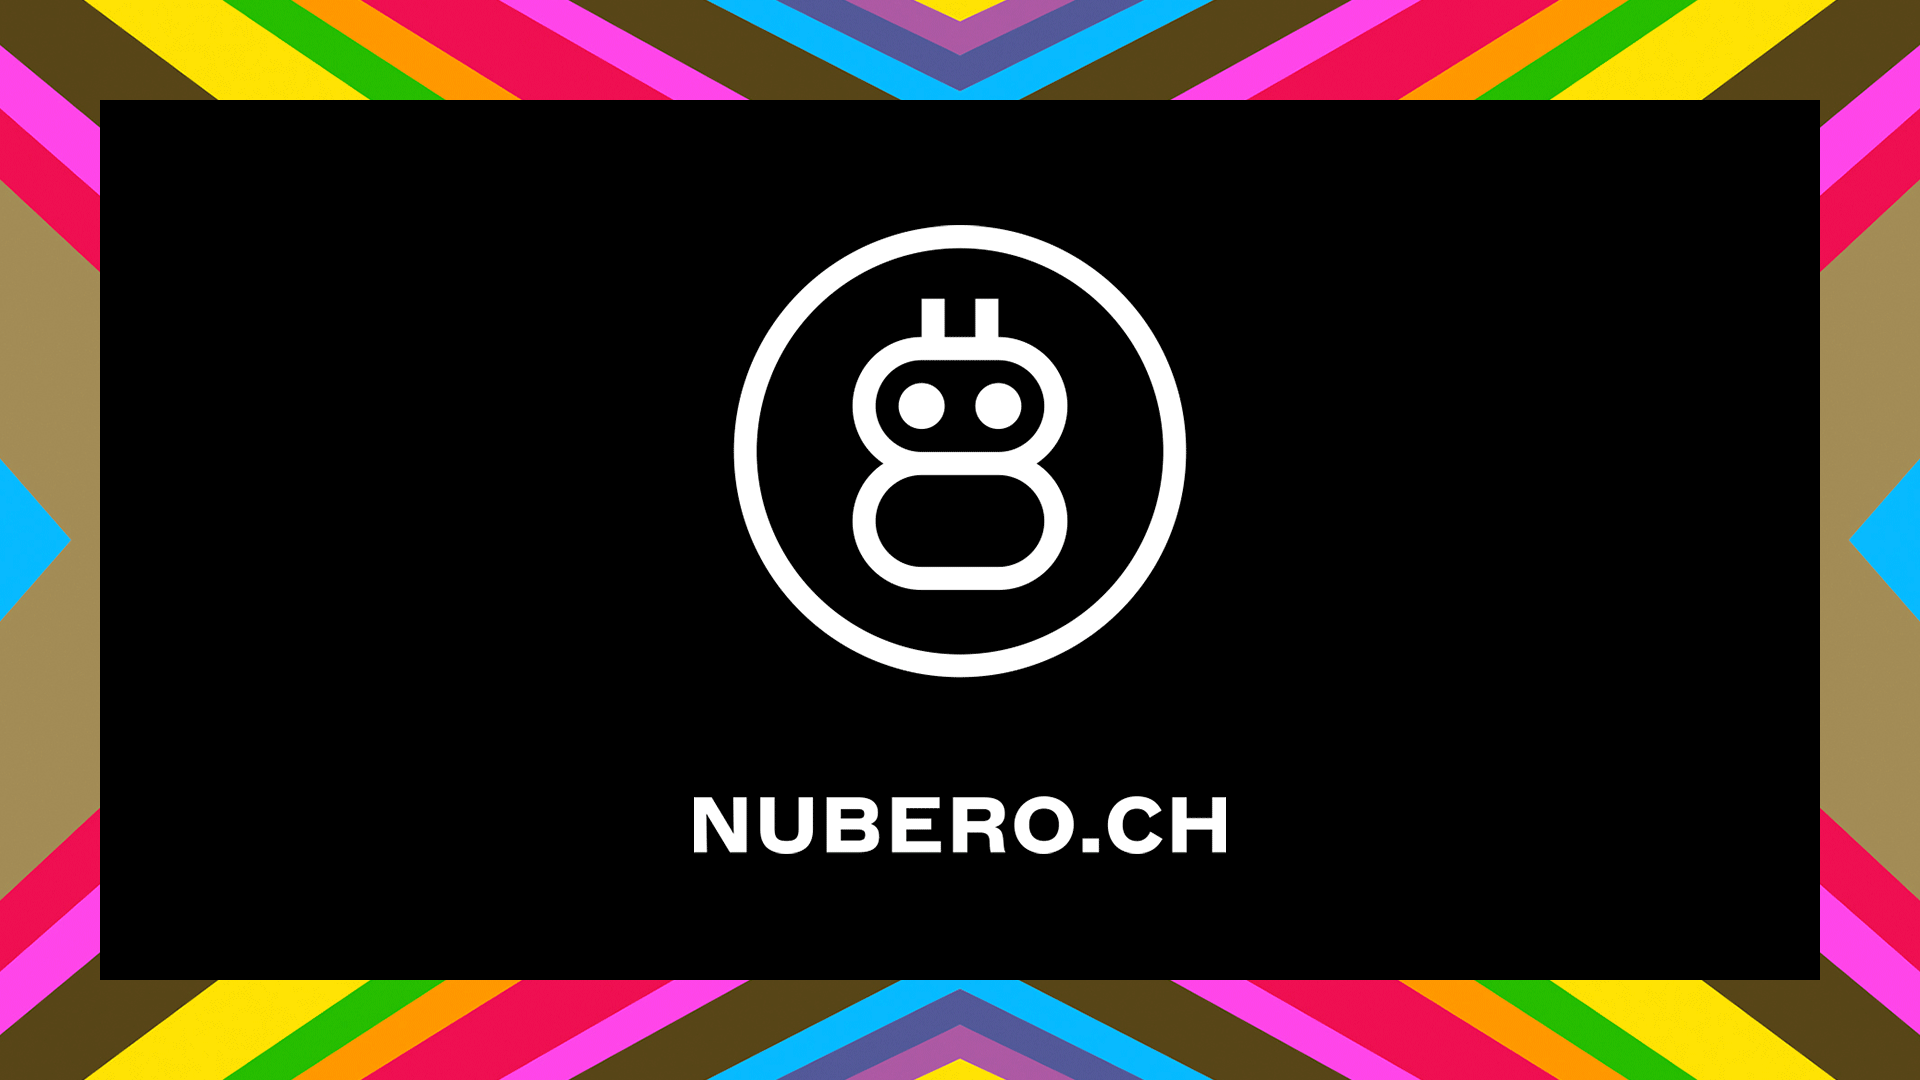 (c) Nubero.ch